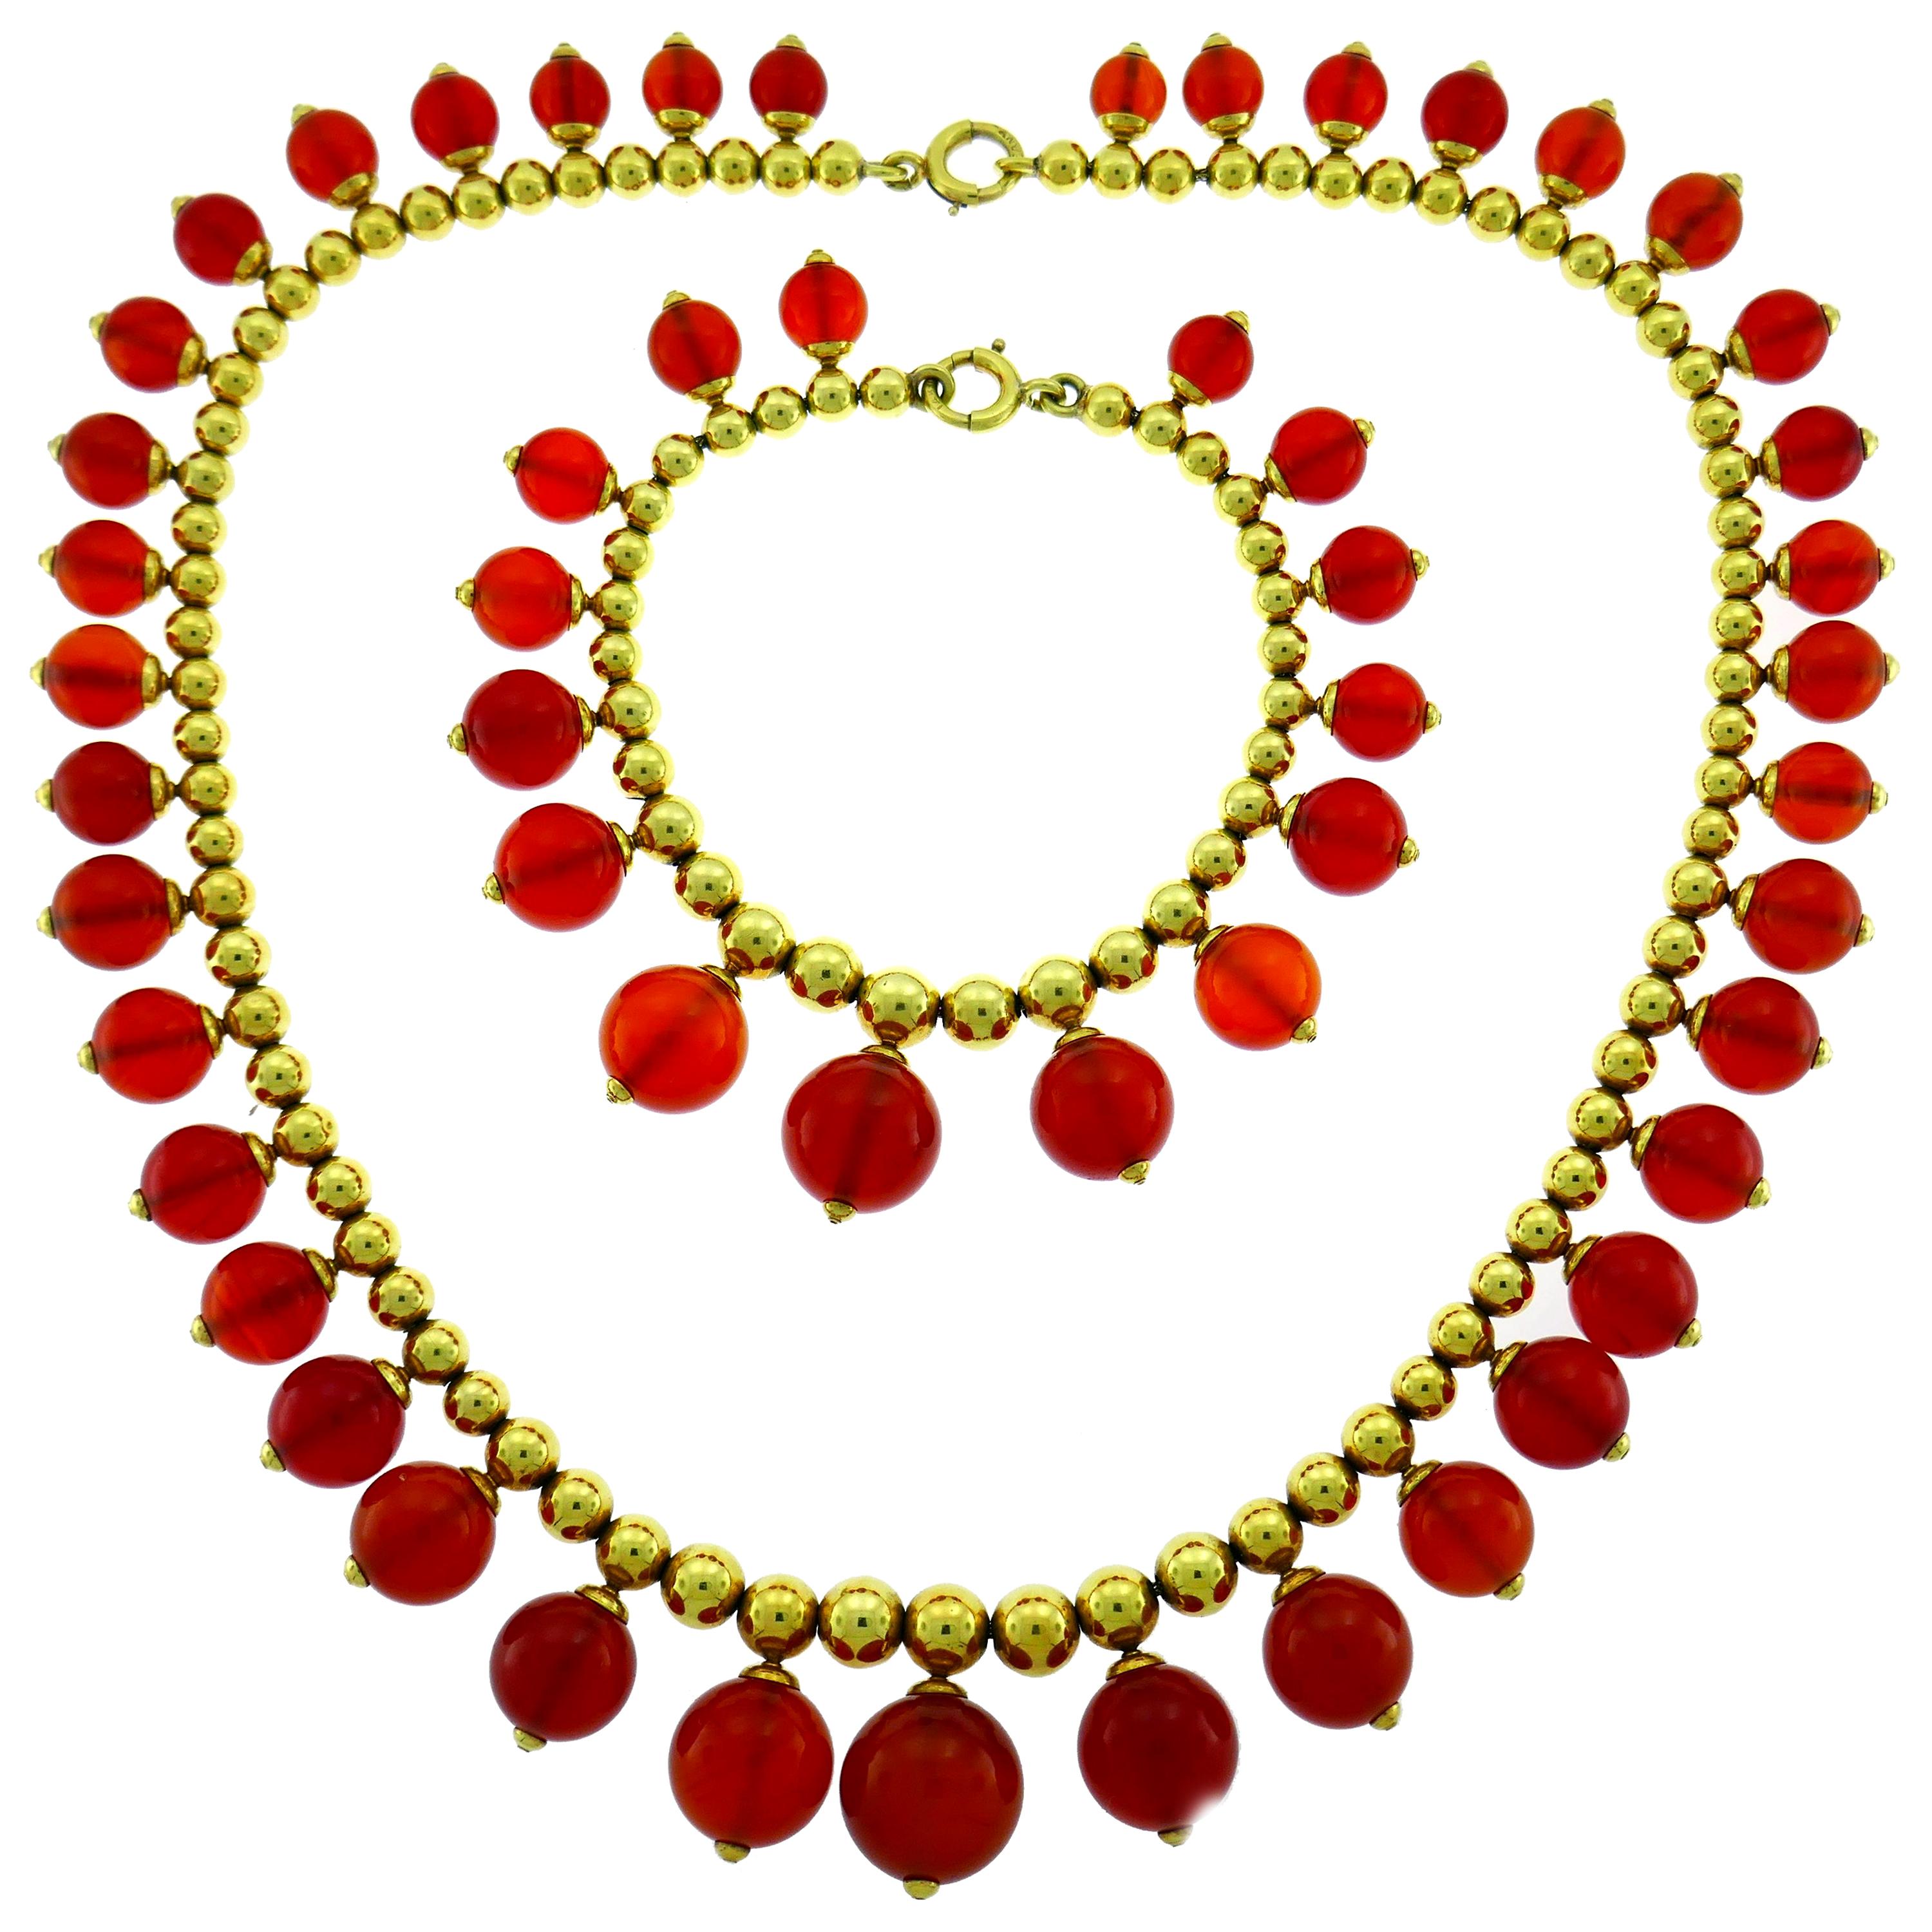 Tiffany & Co. Carnelian Gold Necklace Bracelet Set